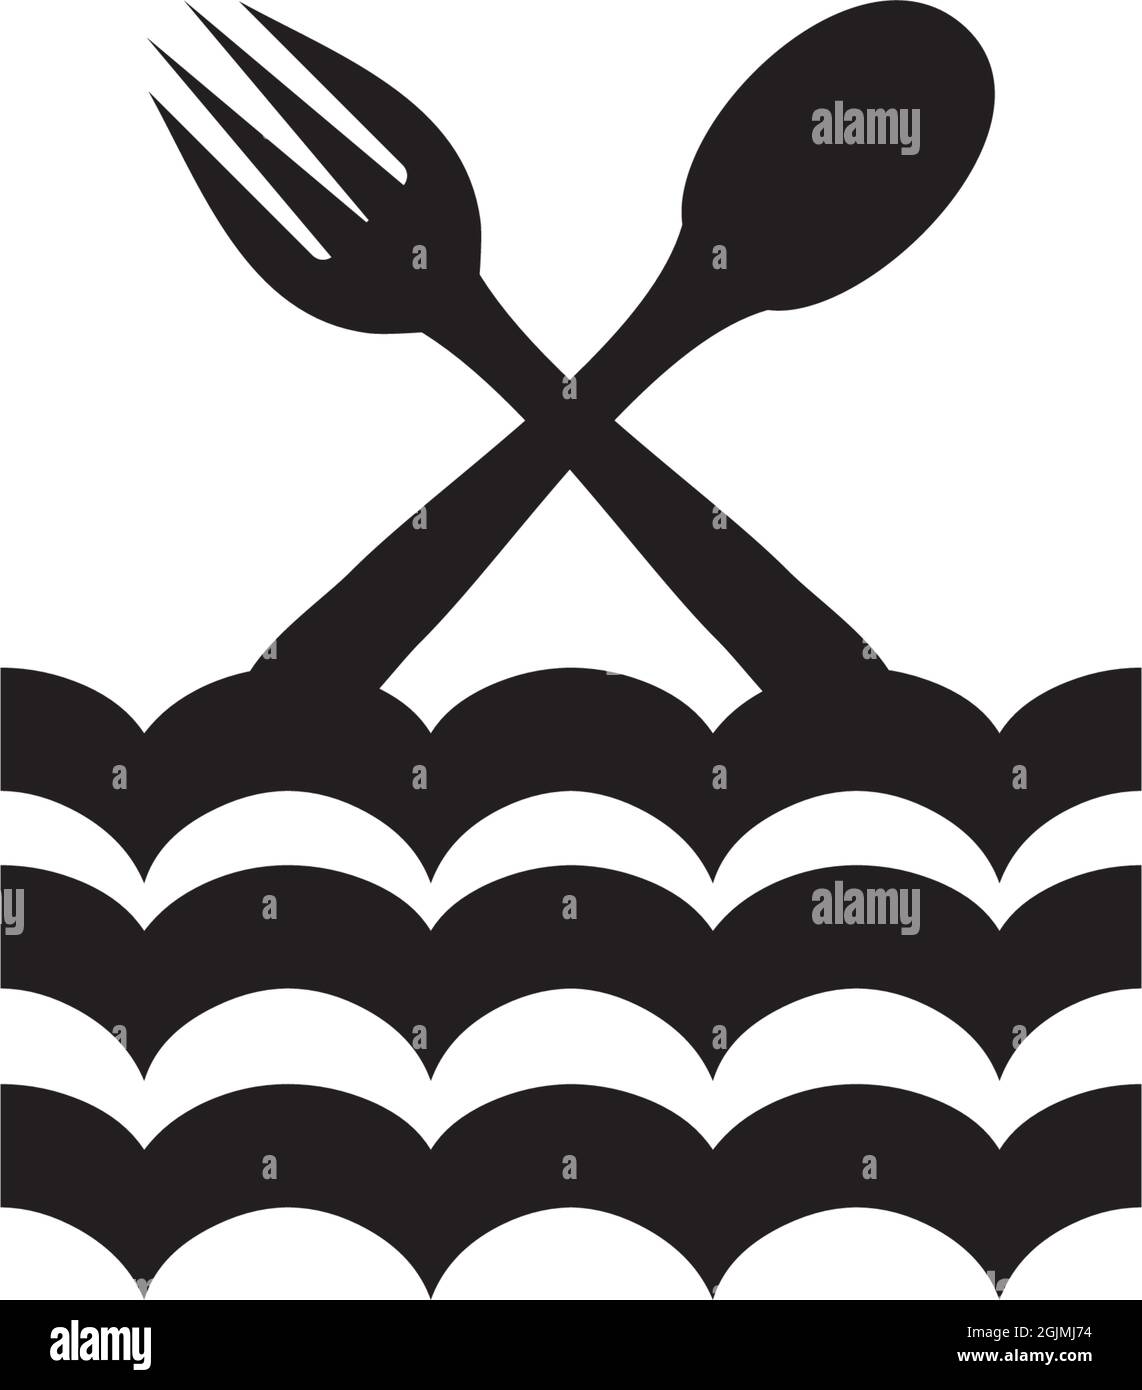 Restaurant logo design inspiration concept vector template Stock Vector